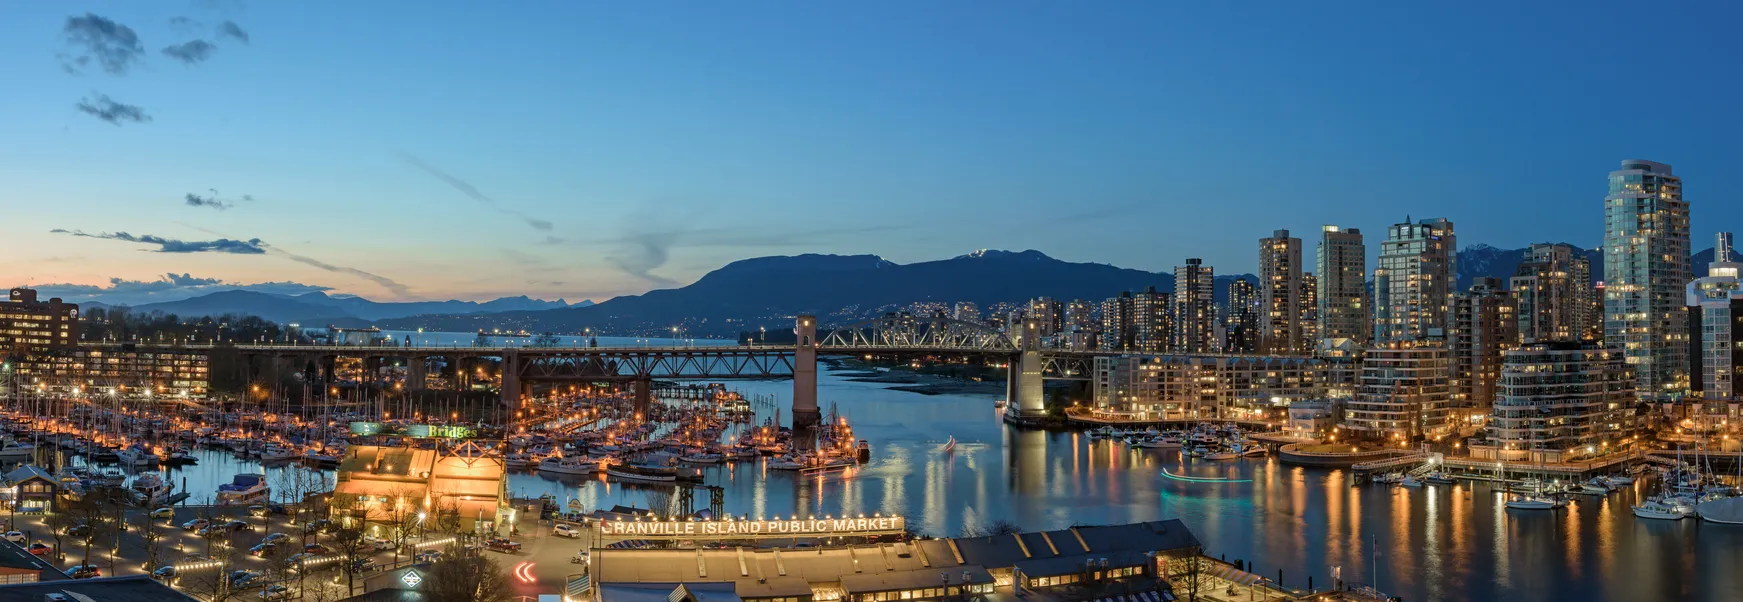 Vue panoramique de Vancouver avec le Burrard Street Bridge et Granville Island © iStock/Alen Szylowiec